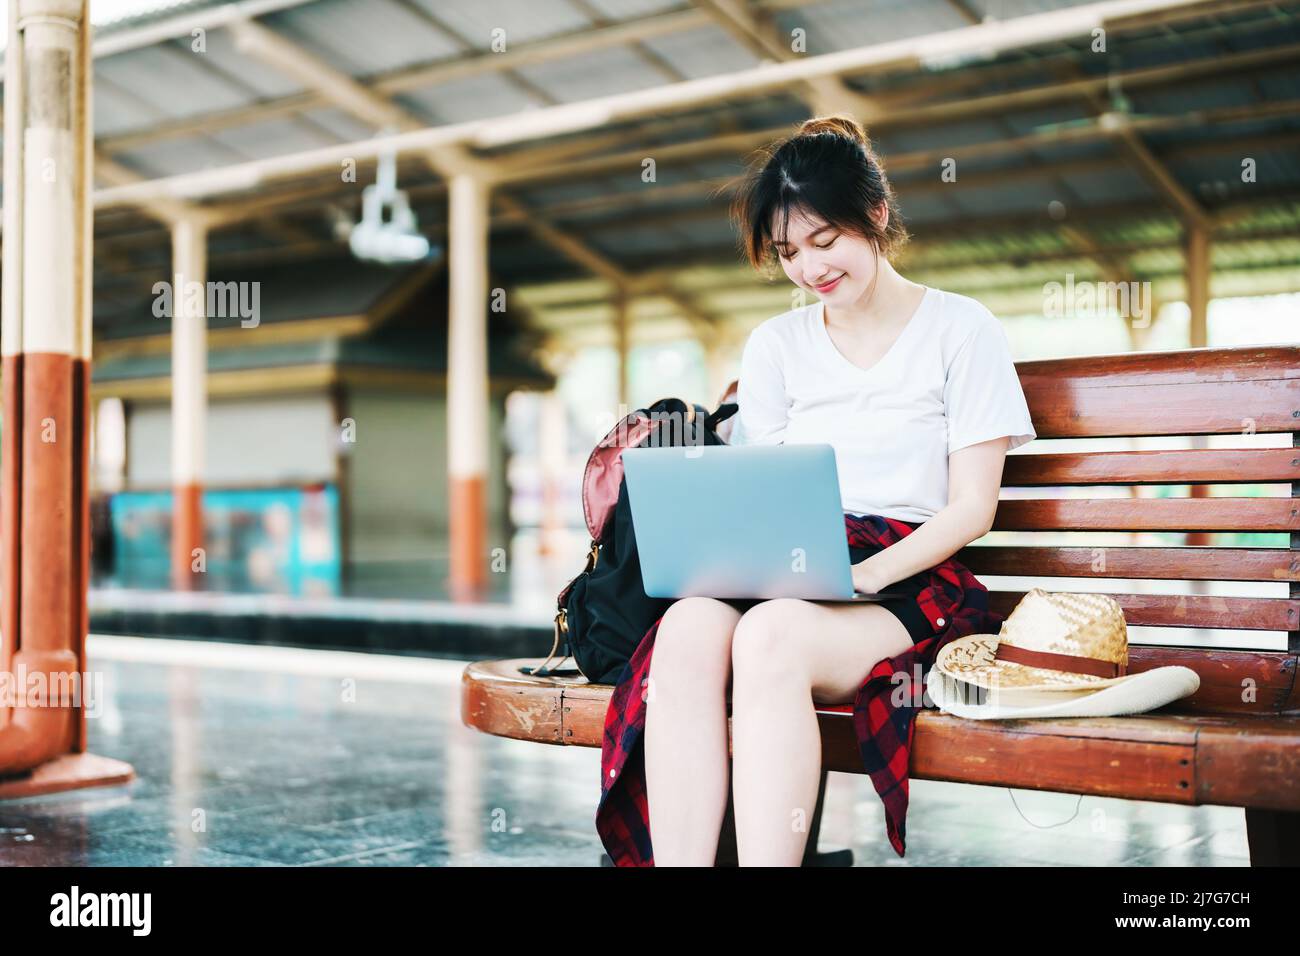 Estate, relax, vacanza, viaggio, ritratto di bella ragazza asiatica utilizzando il computer portatile alla stazione ferroviaria, in attesa del loro tempo di viaggio. Foto Stock